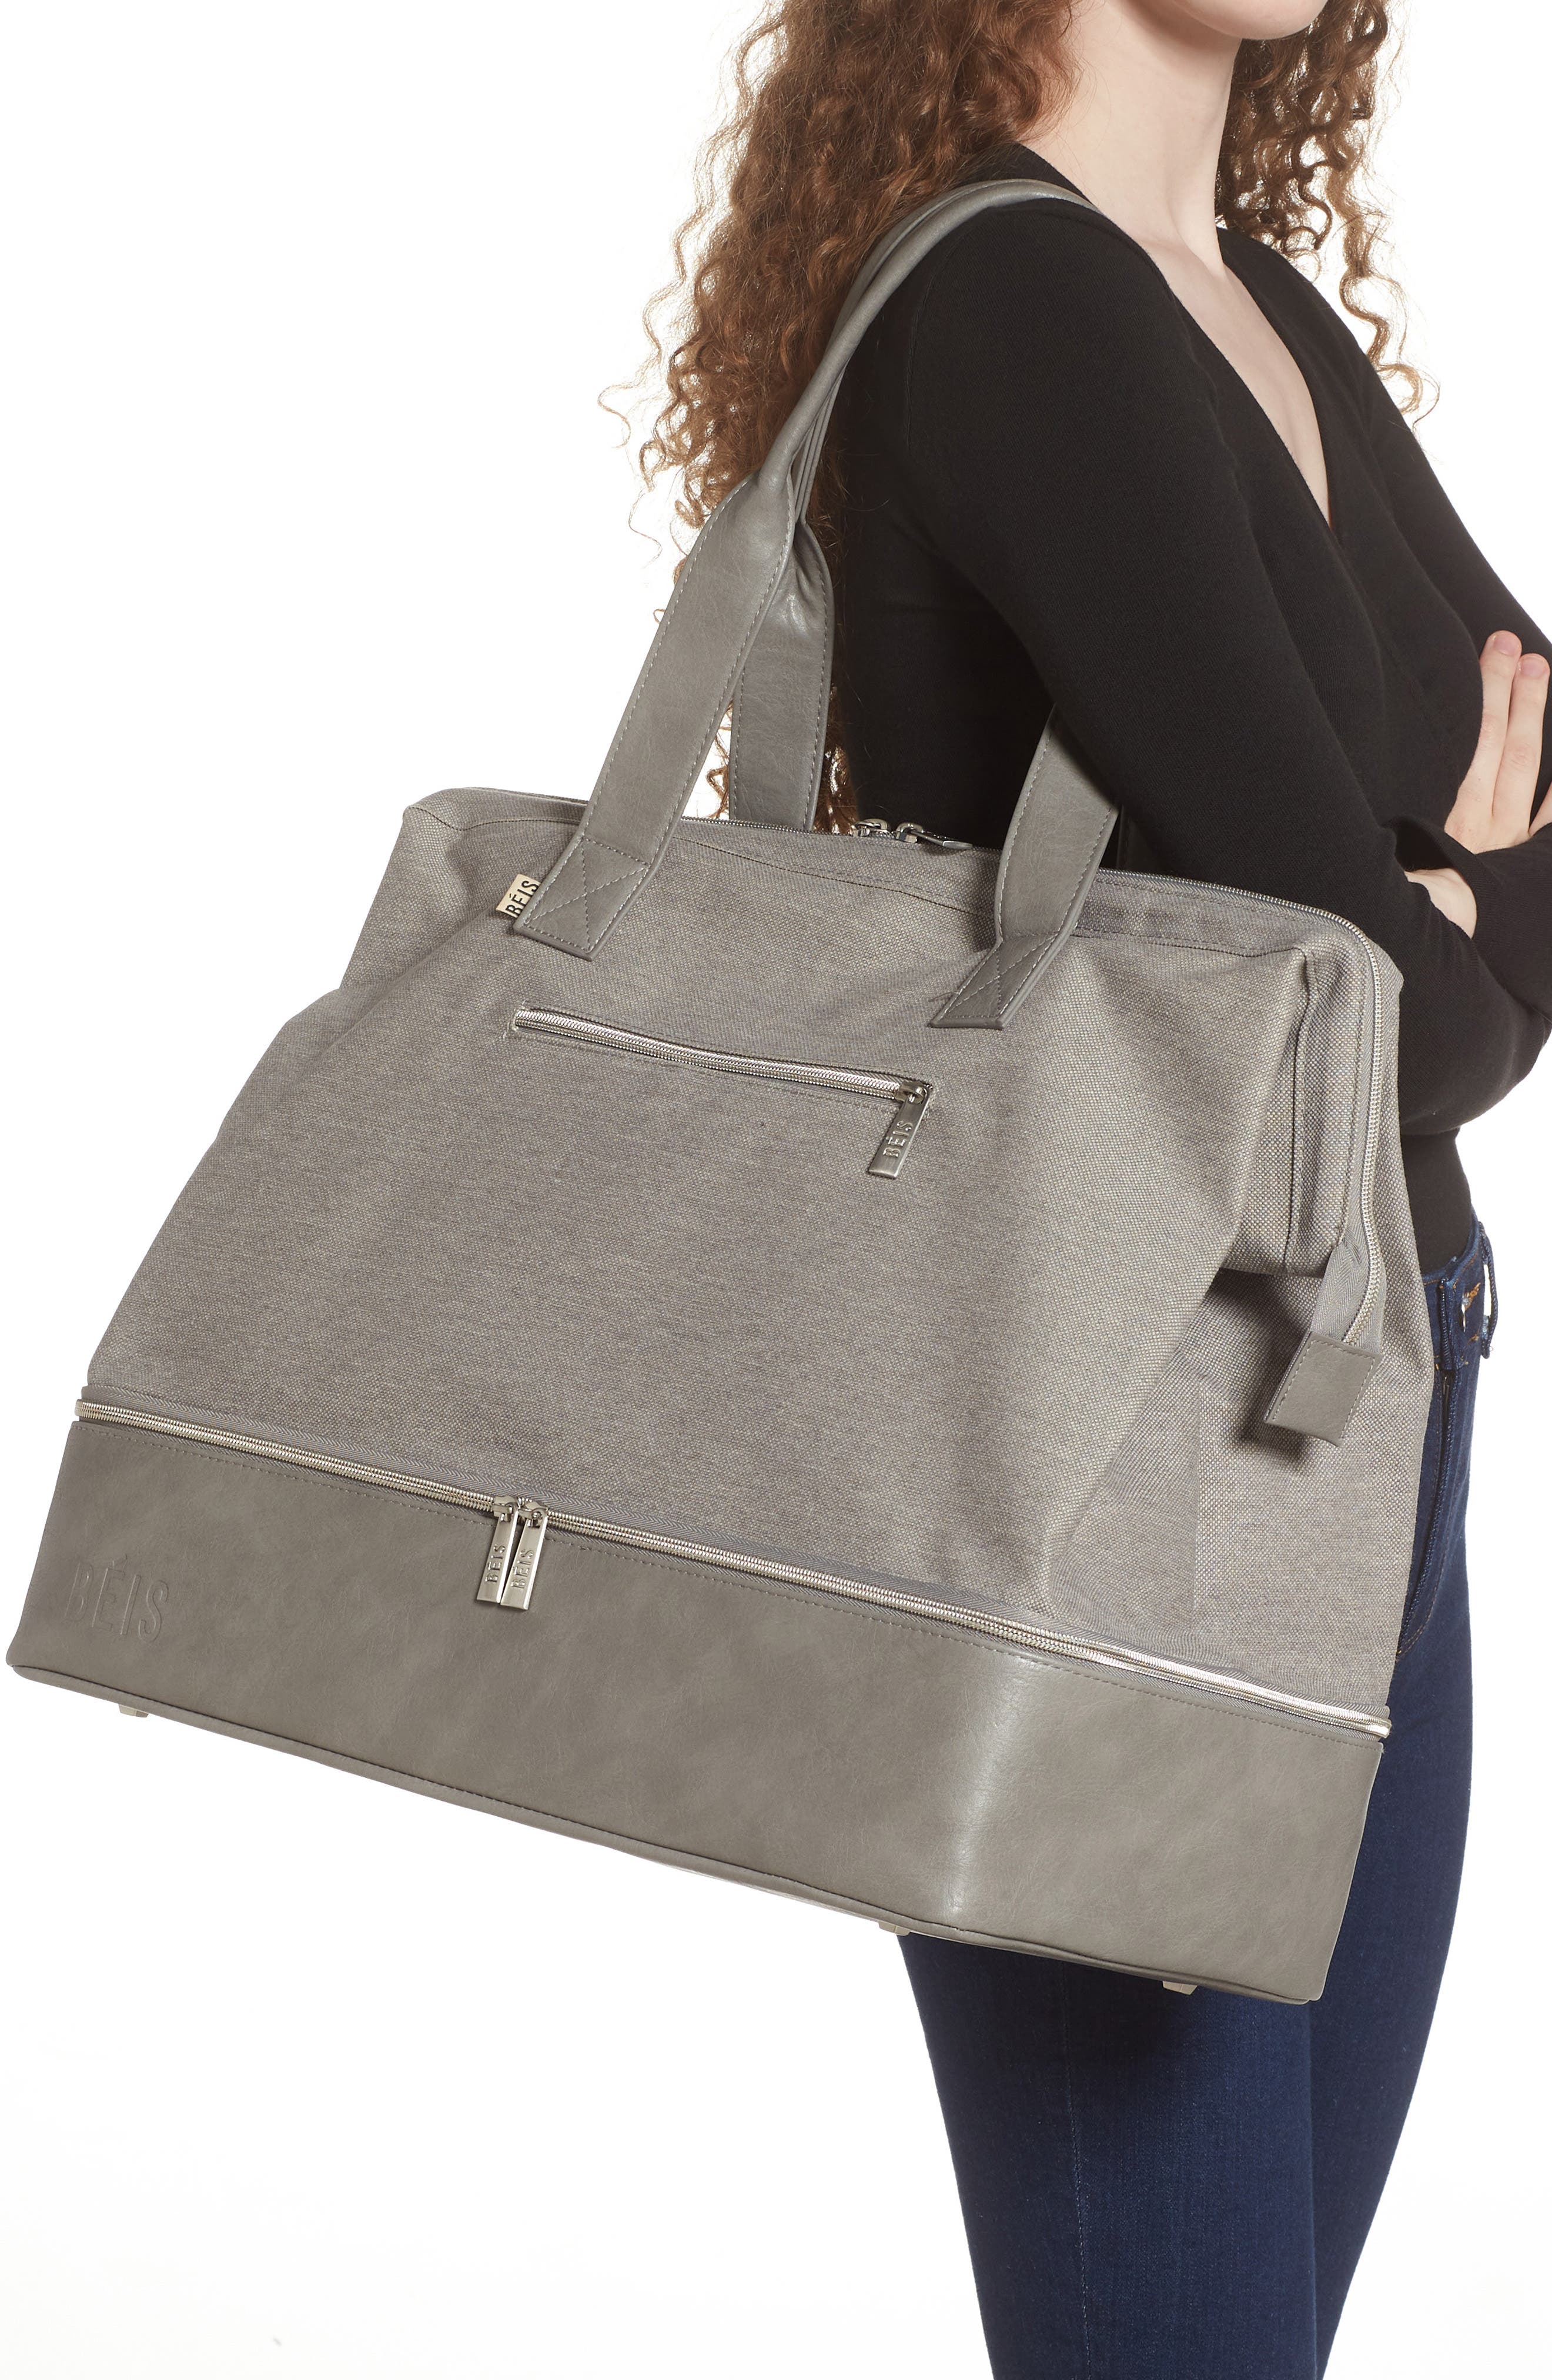 Béis The Weekend Tote Bag in Grey